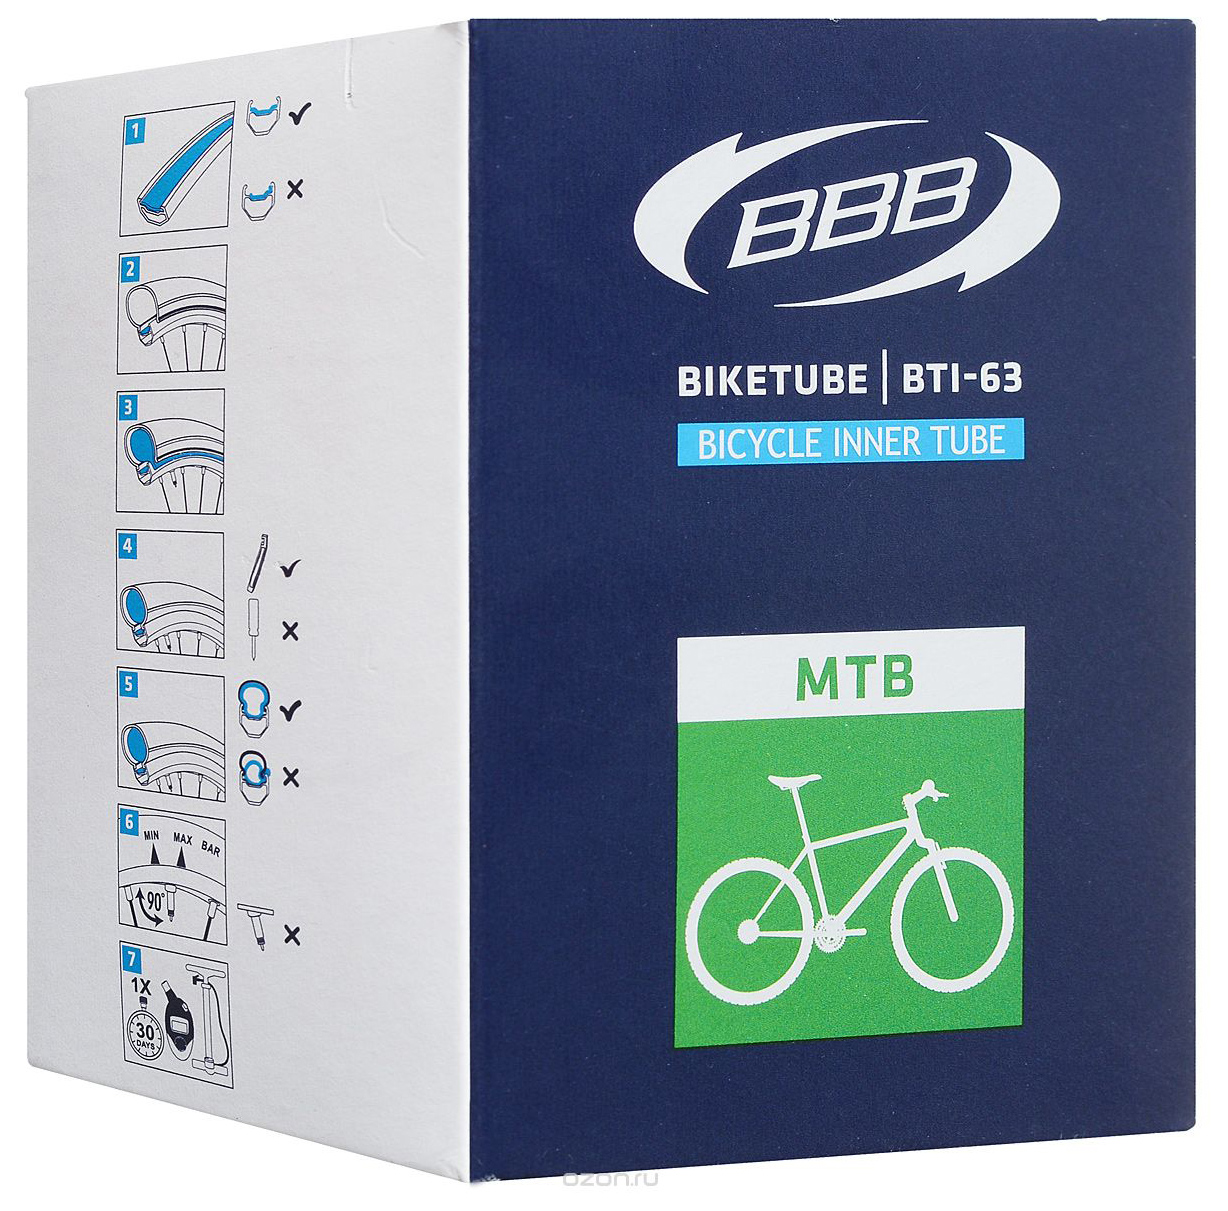  Камера для велосипеда BBB BTI-63 BikeTube 26*1,75/2,35 FV 48 mm